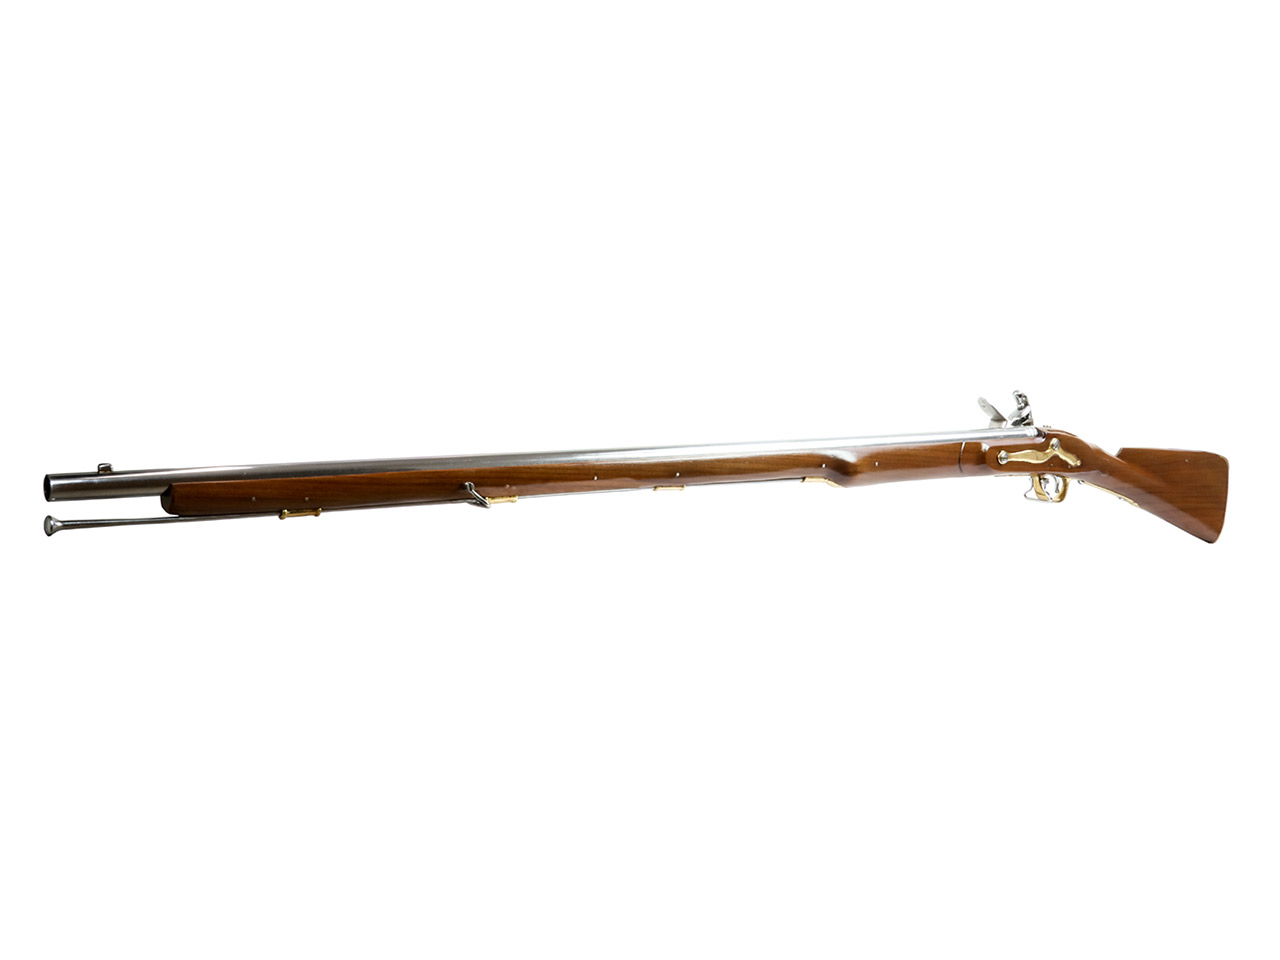 Vorderlader Steinschlossgewehr Brown Bess Long Land Pattern 1730 Musket, Kaliber .73 bzw. 18,5 mm (P18)